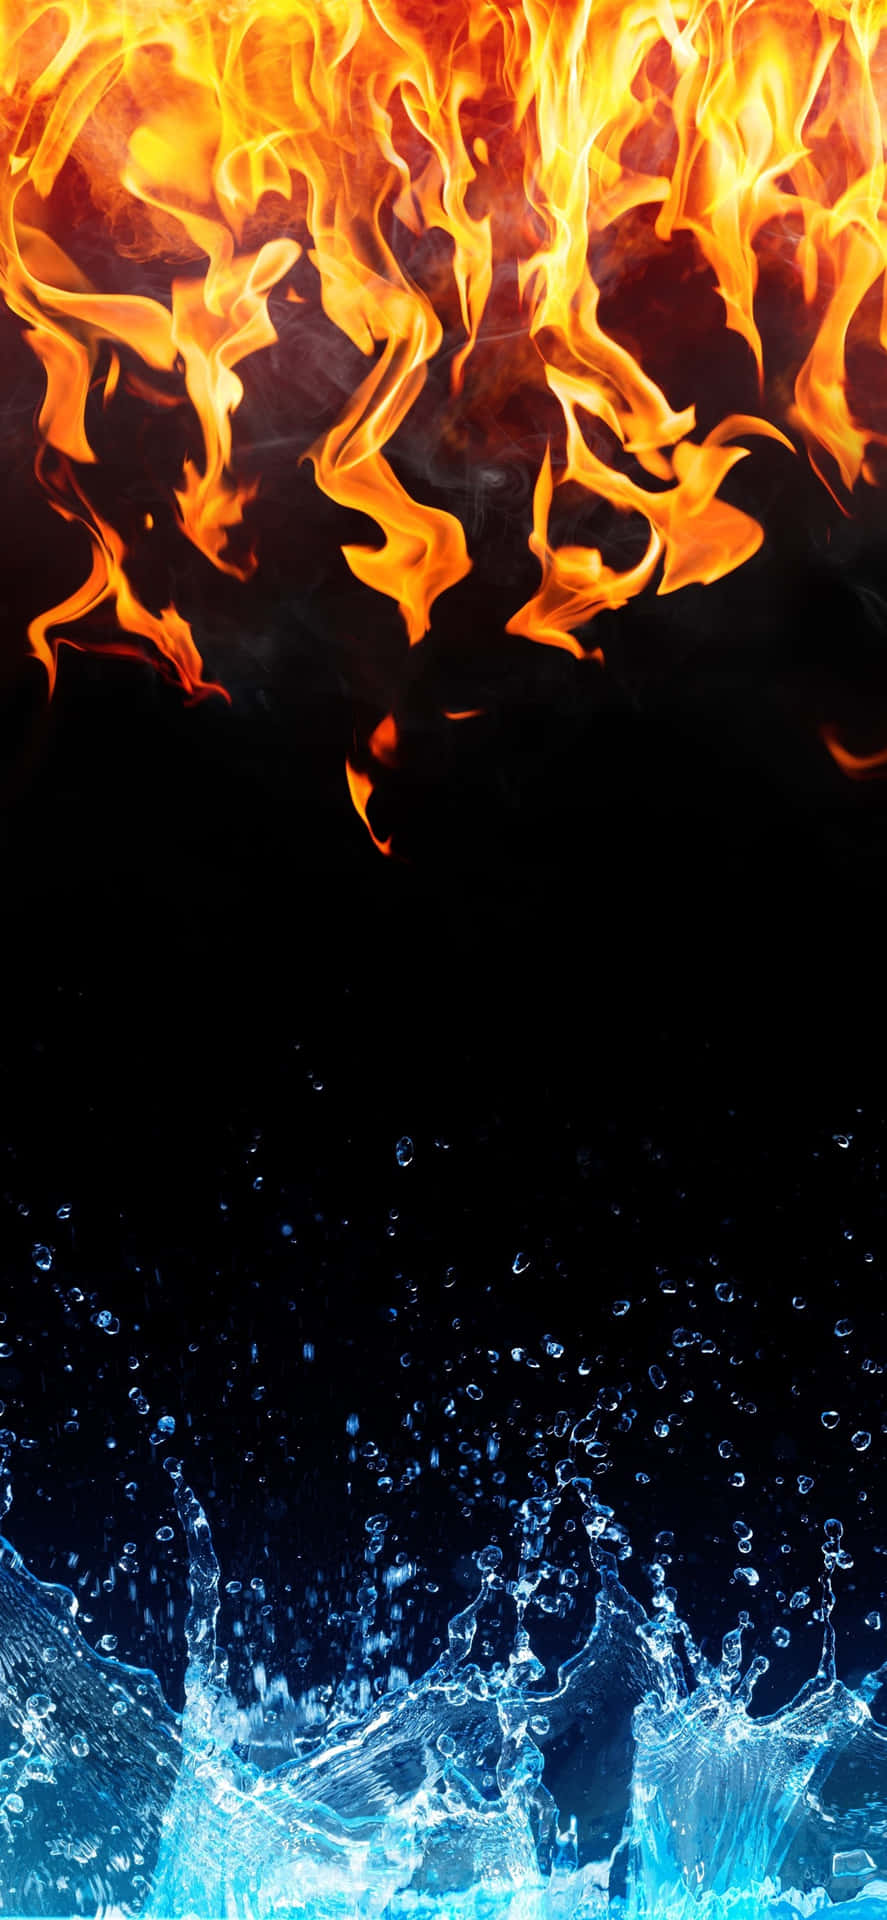 Kollisionen af de elementære kræfter - ild og vand - skaber et fascinerende billede. Wallpaper